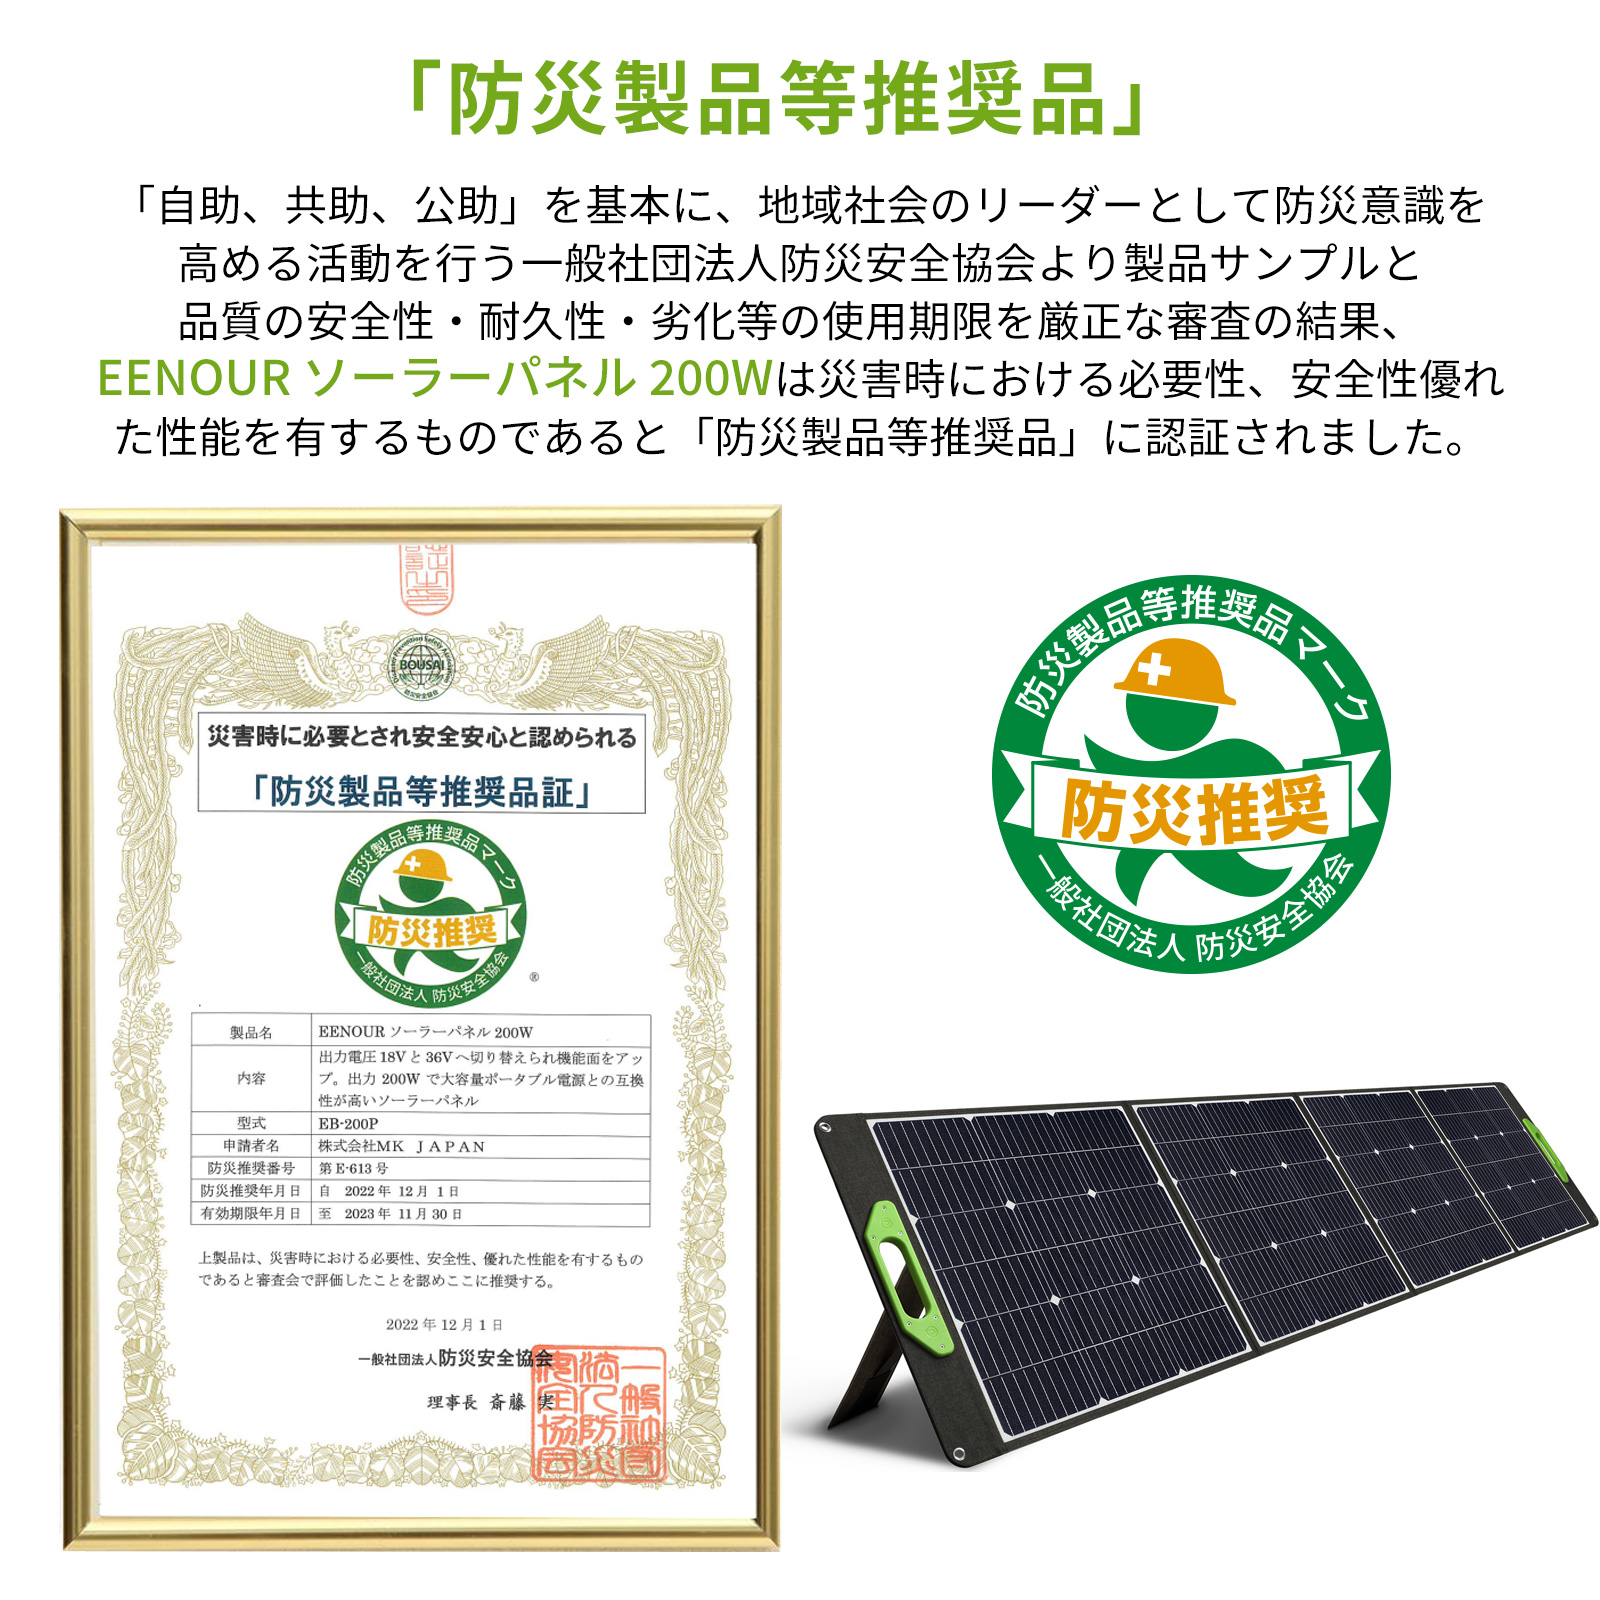 ご予約品】 VDL ソーラーパネル 200W 太陽光発電 単結晶 高変換効率